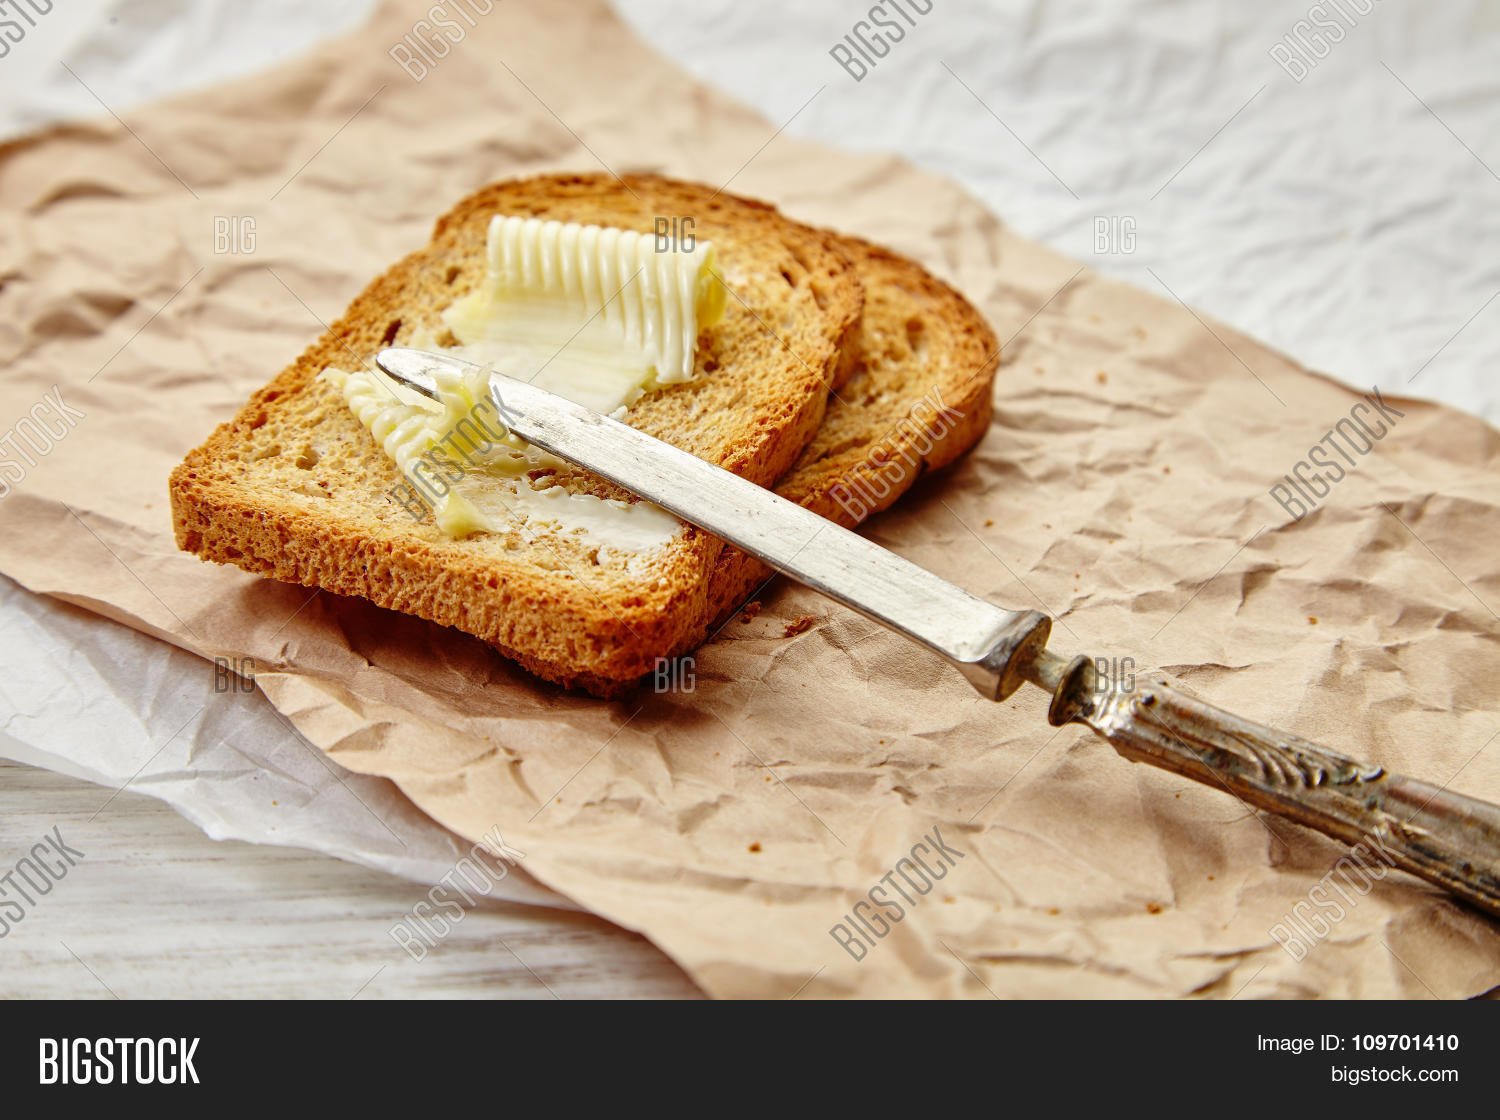 Хлеб с маслом польза. Бутерброд с маслом. Хлеб с маслом. Сливочное масло на хлебе. Красивый бутерброд с маслом.